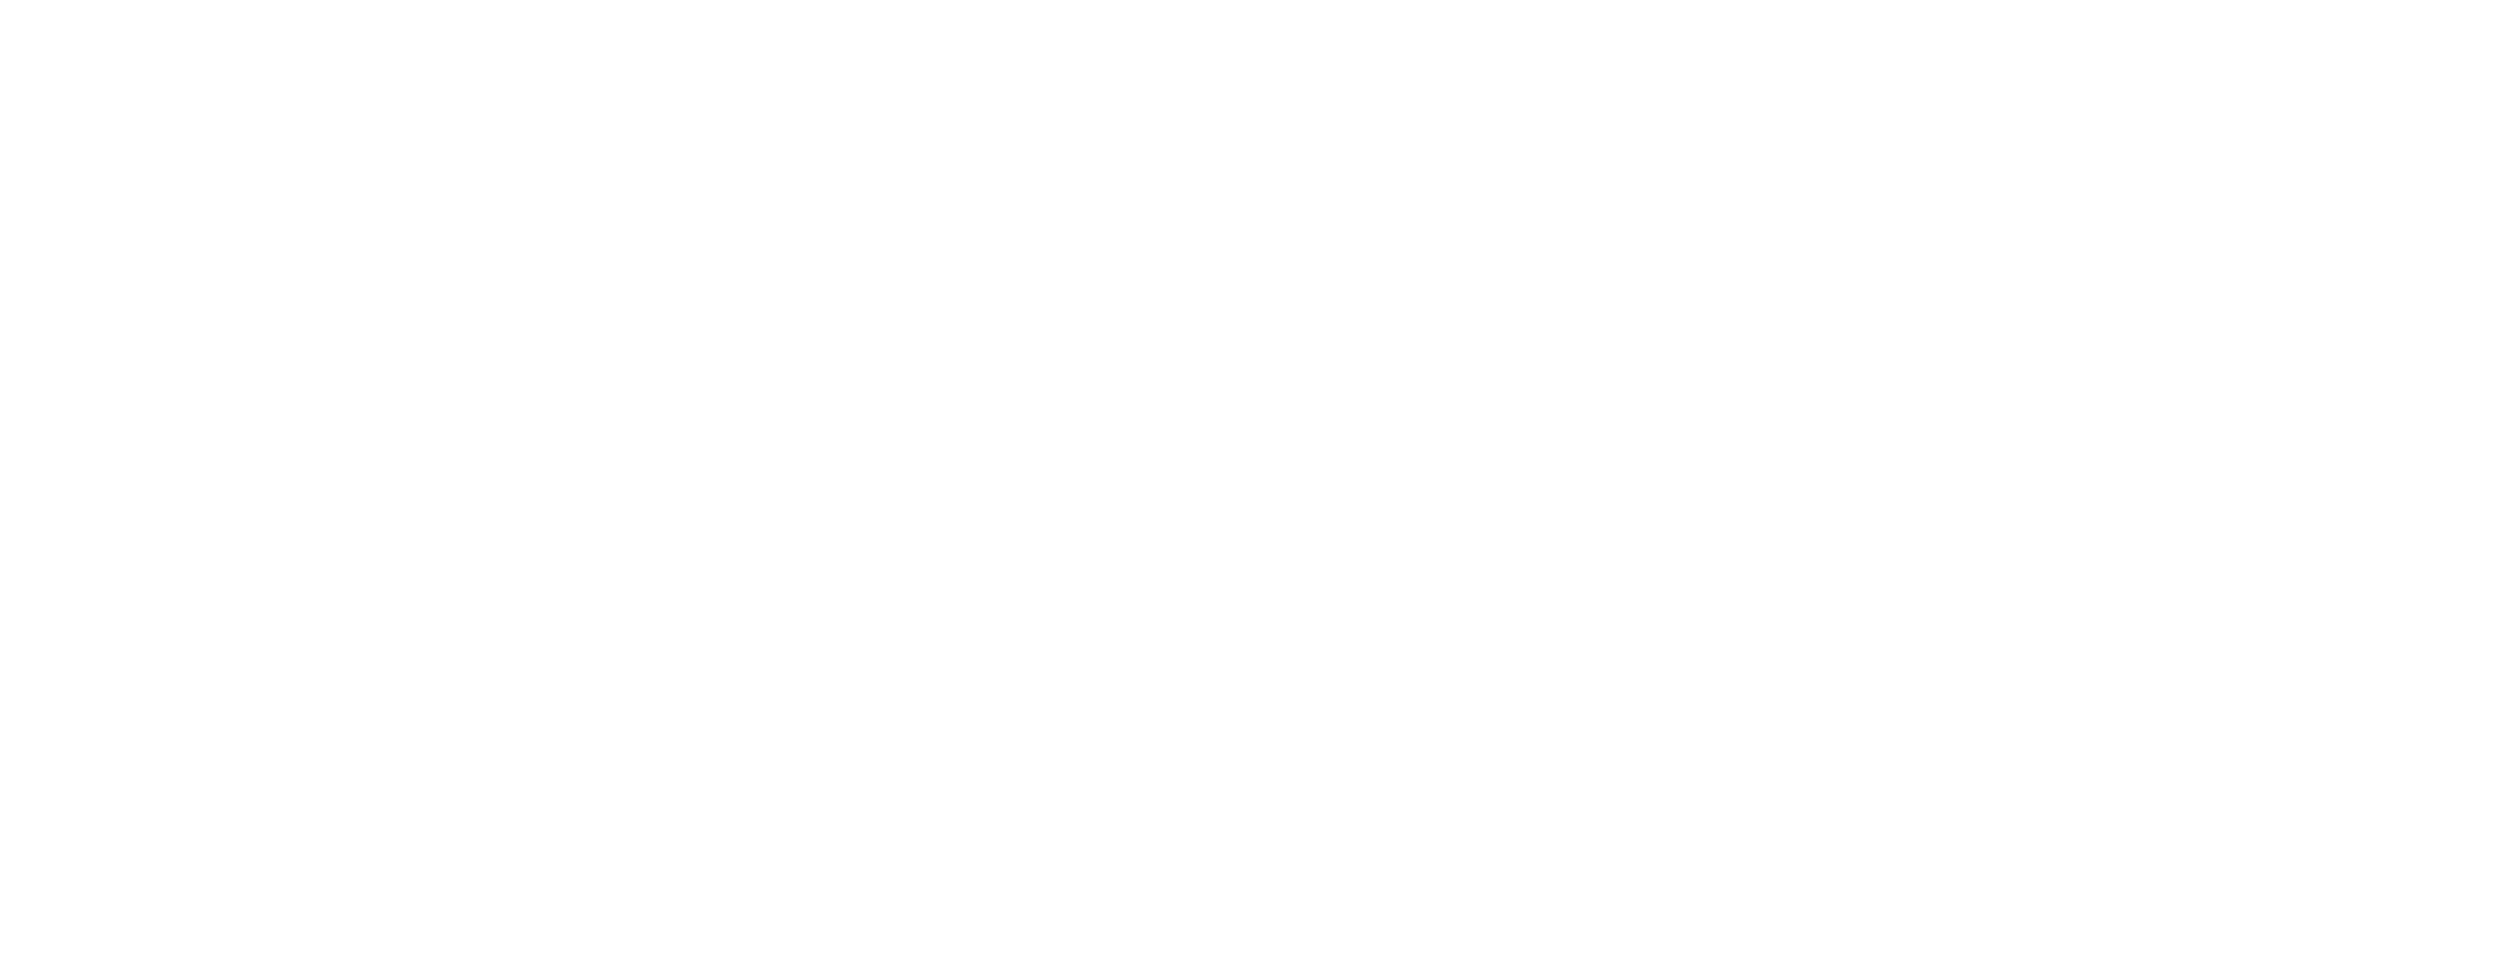 Swift App School